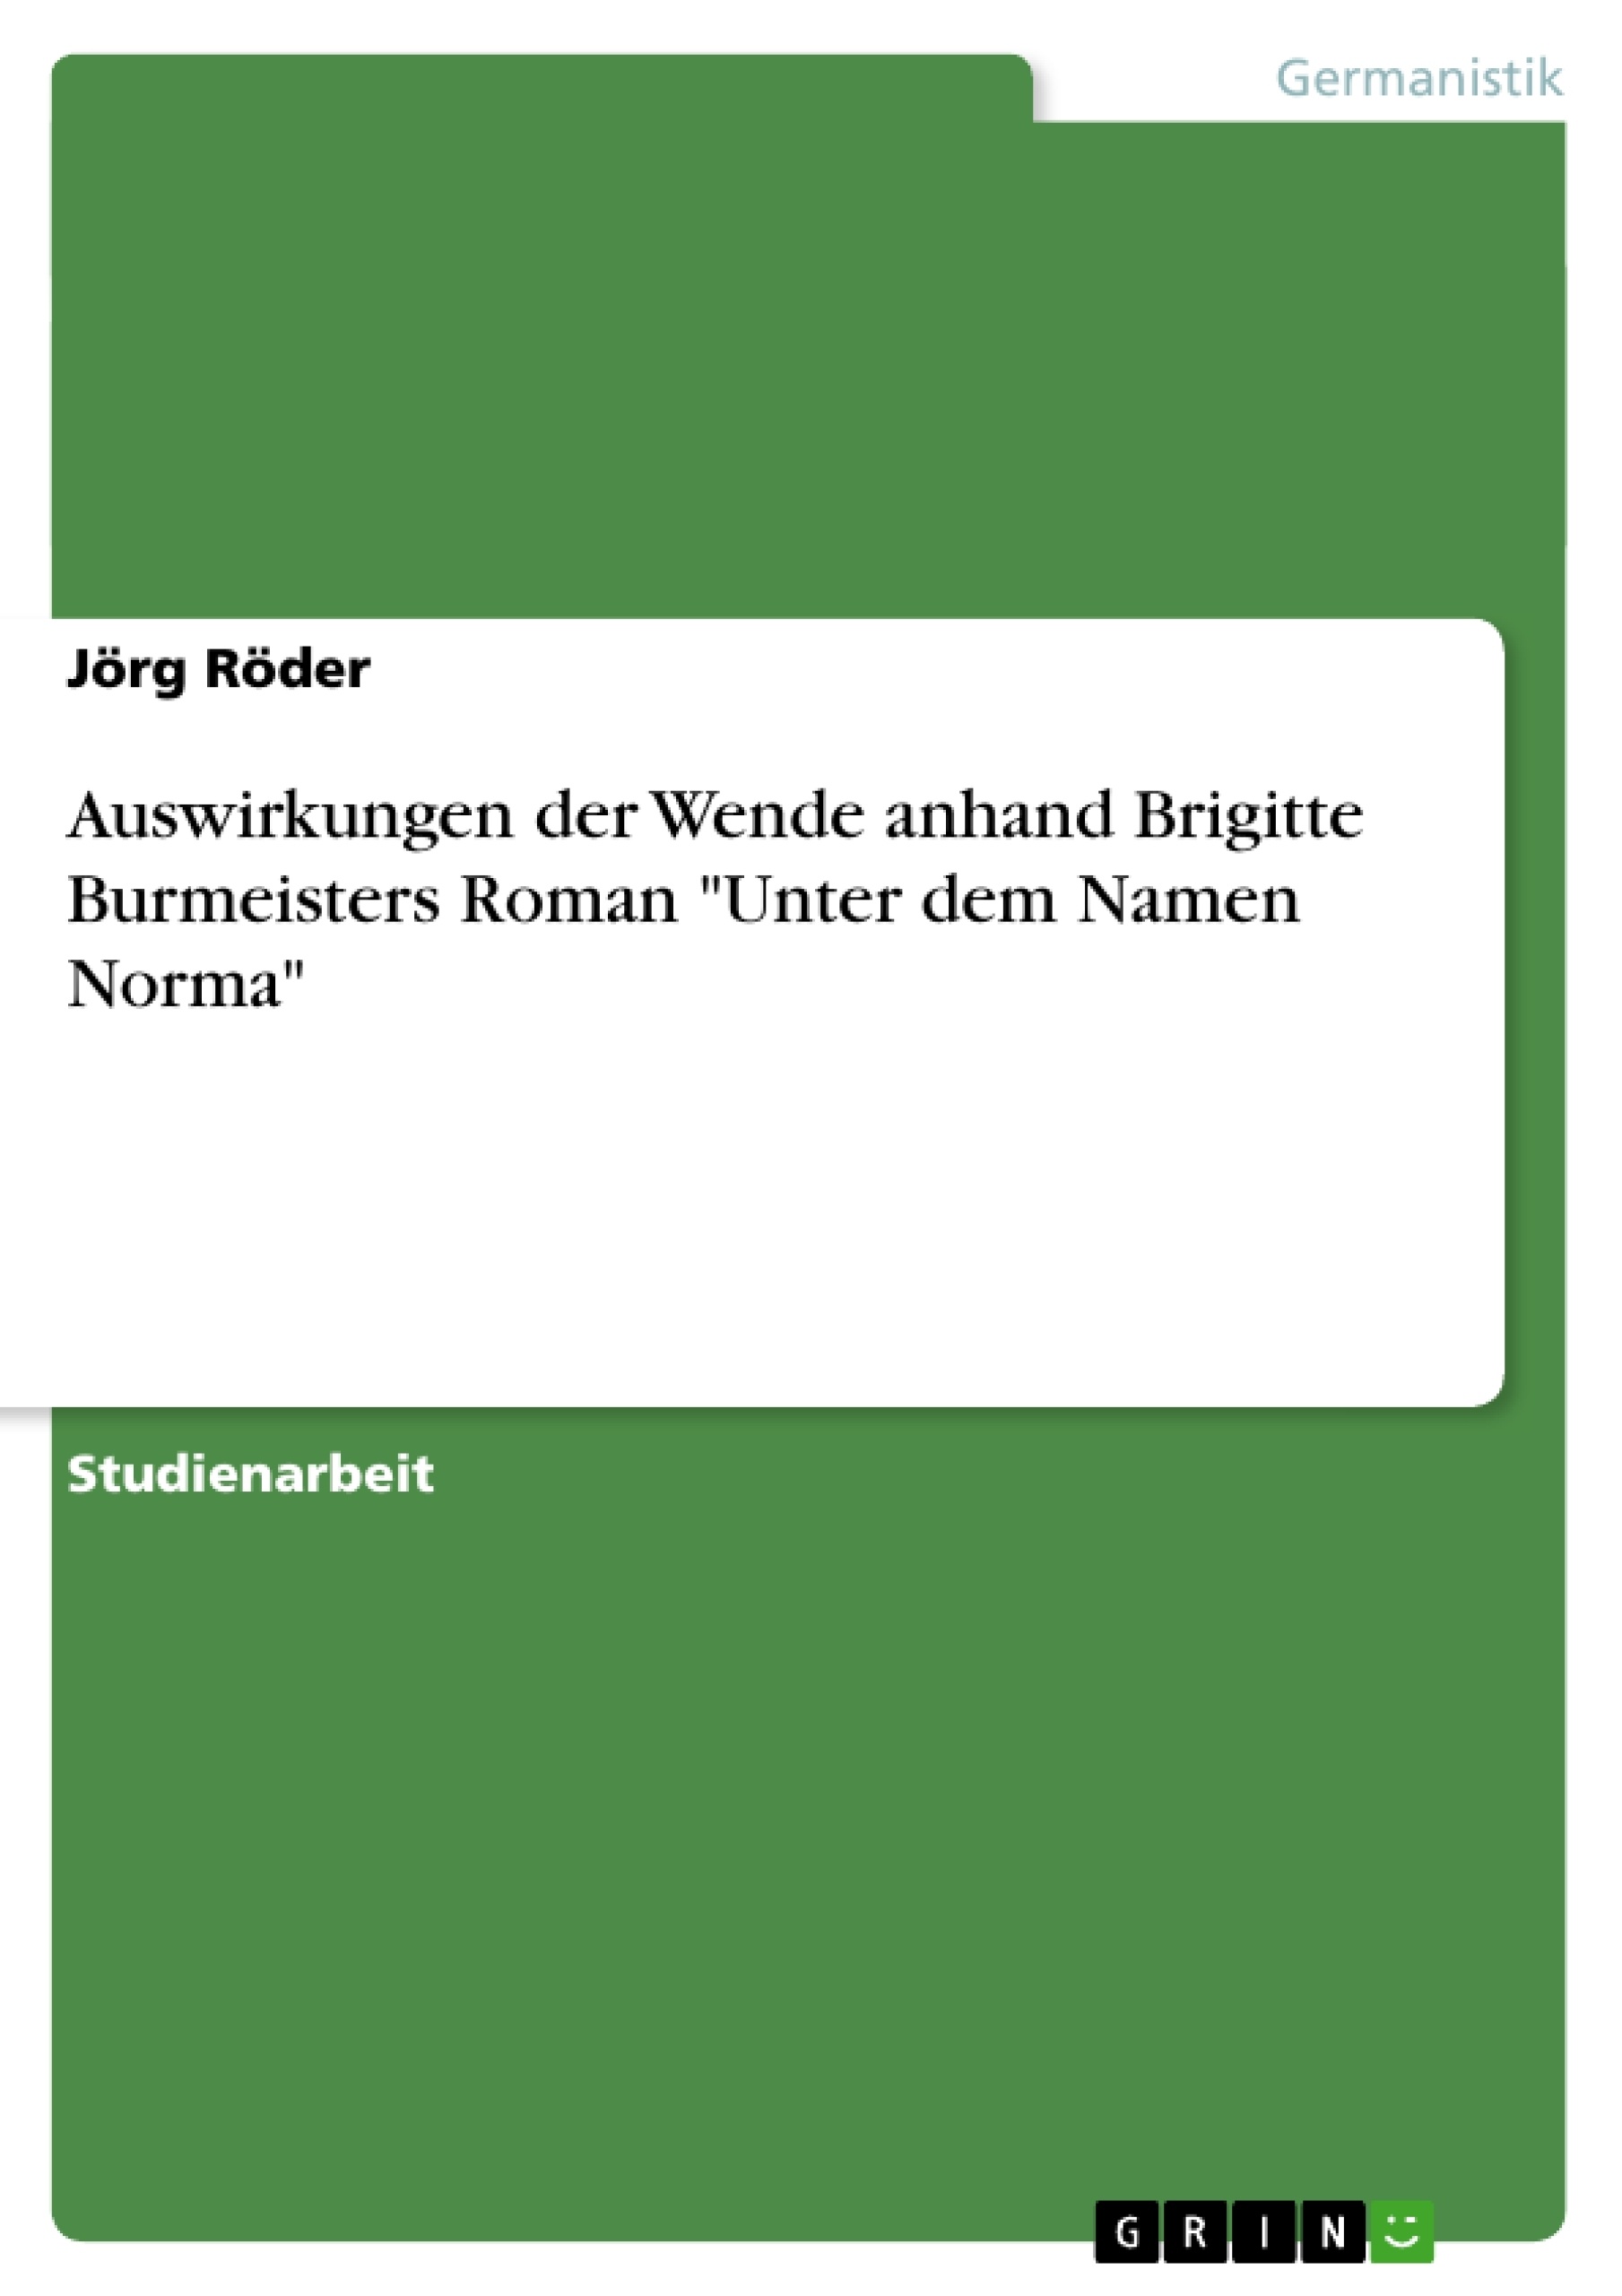 Título: Auswirkungen der Wende anhand Brigitte Burmeisters Roman "Unter dem Namen Norma"